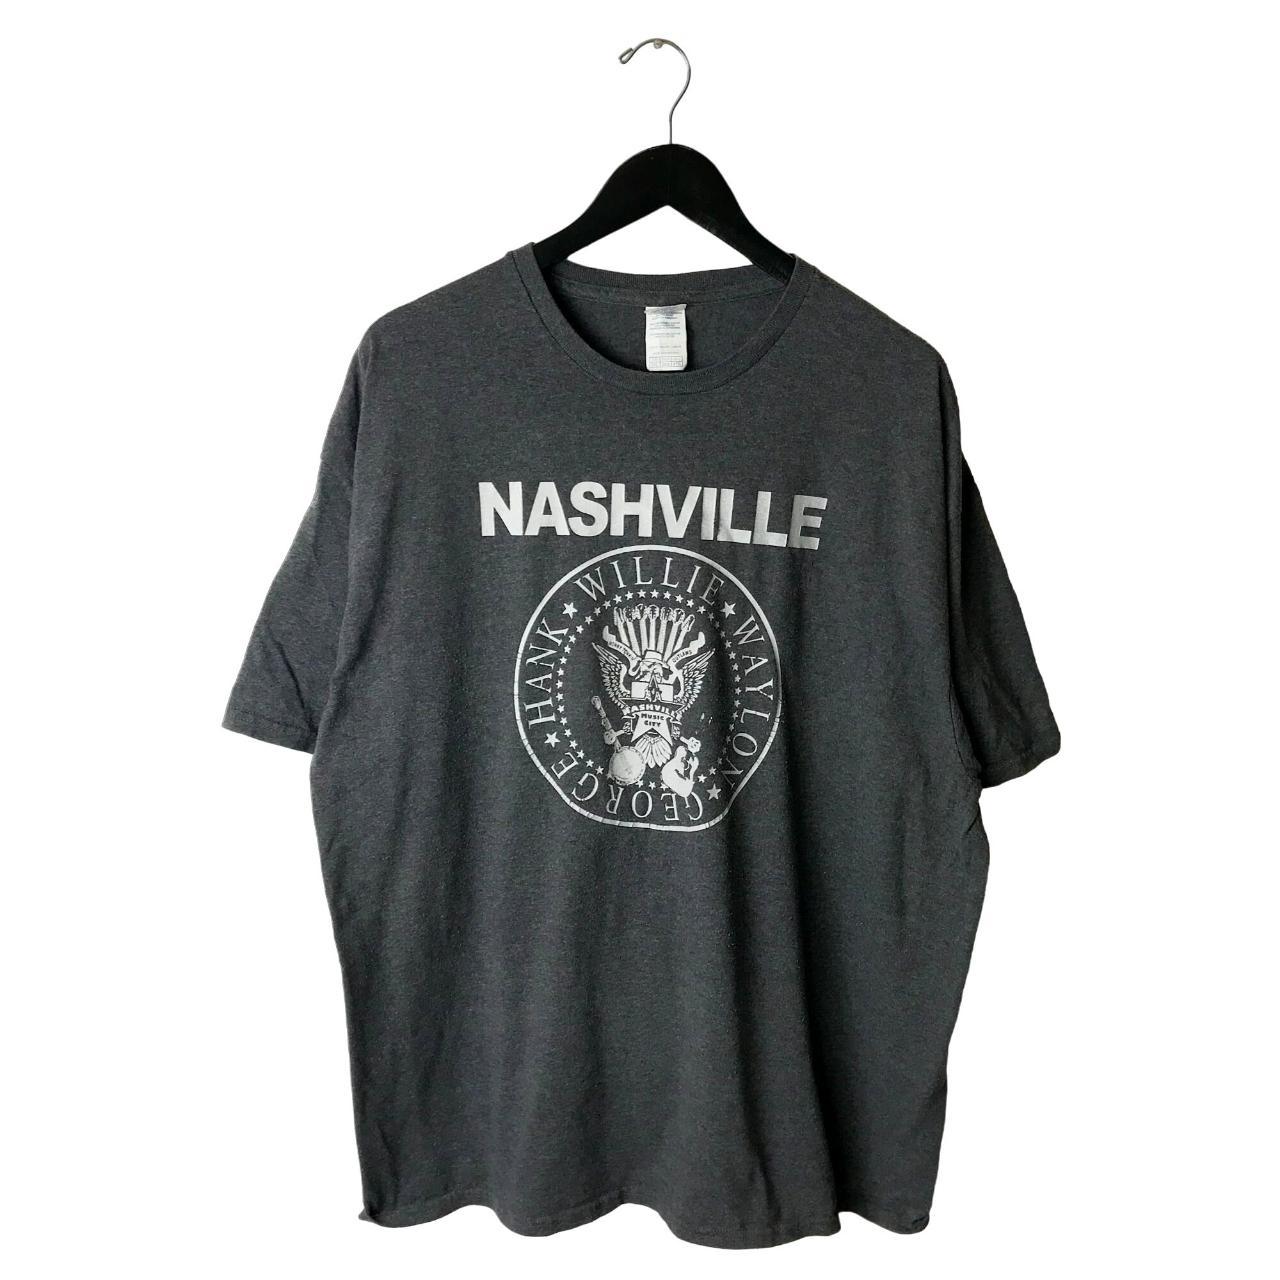 Nashville Willie Waylon George Hank T Shirt Adult... - Depop